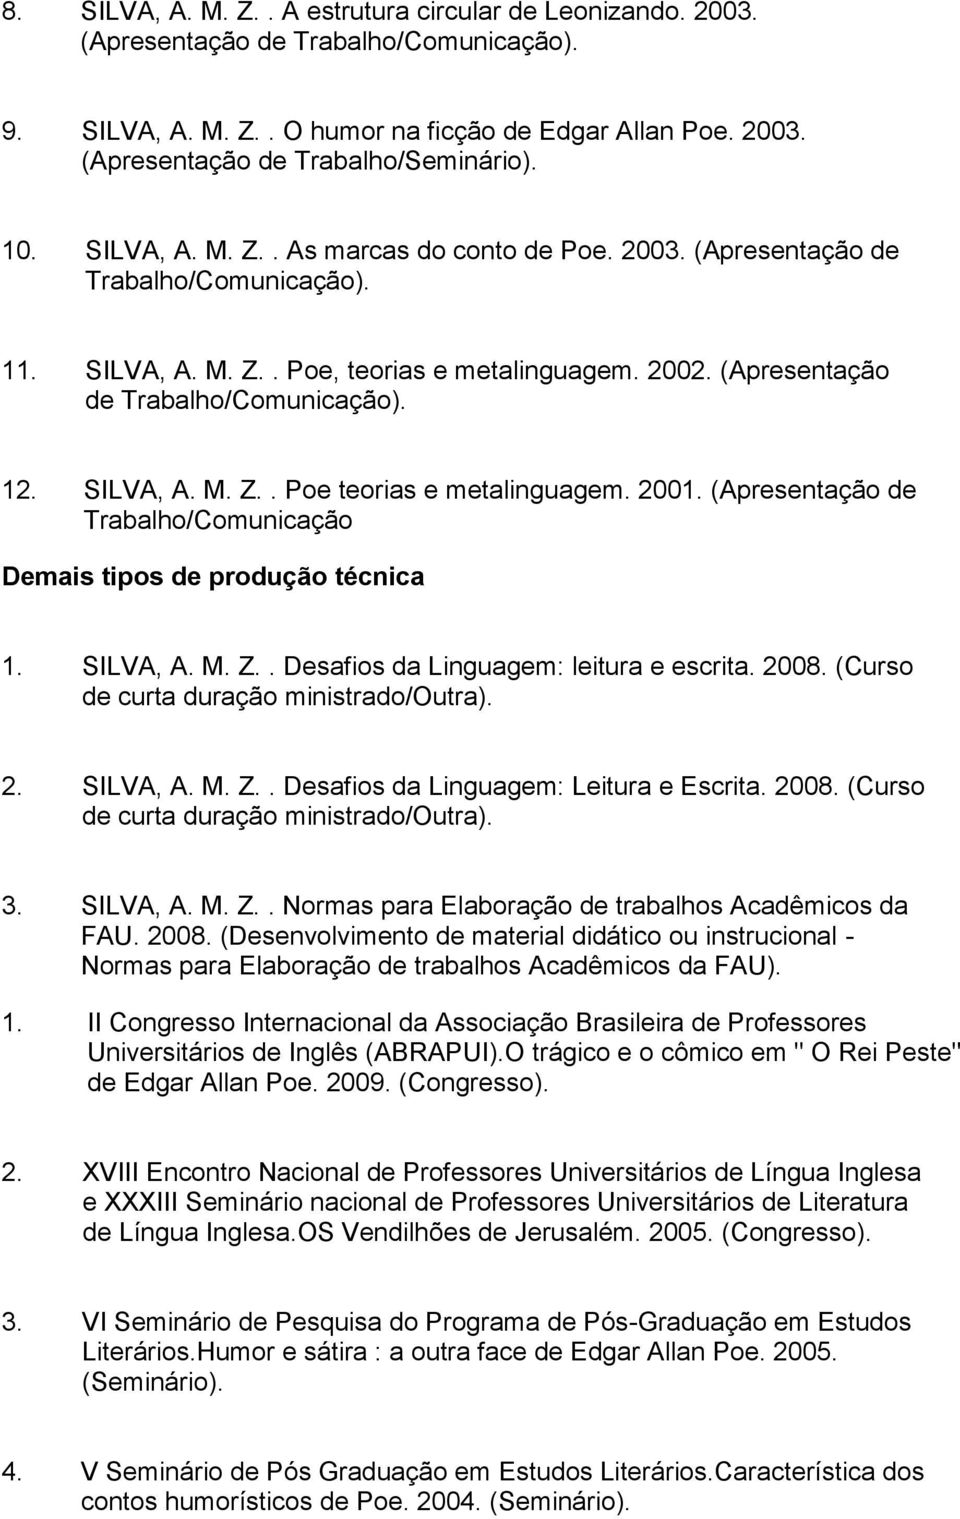 SILVA, A. M. Z.. Poe teorias e metalinguagem. 2001. (Apresentação de Trabalho/Comunicação Demais tipos de produção técnica 1. SILVA, A. M. Z.. Desafios da Linguagem: leitura e escrita. 2008.